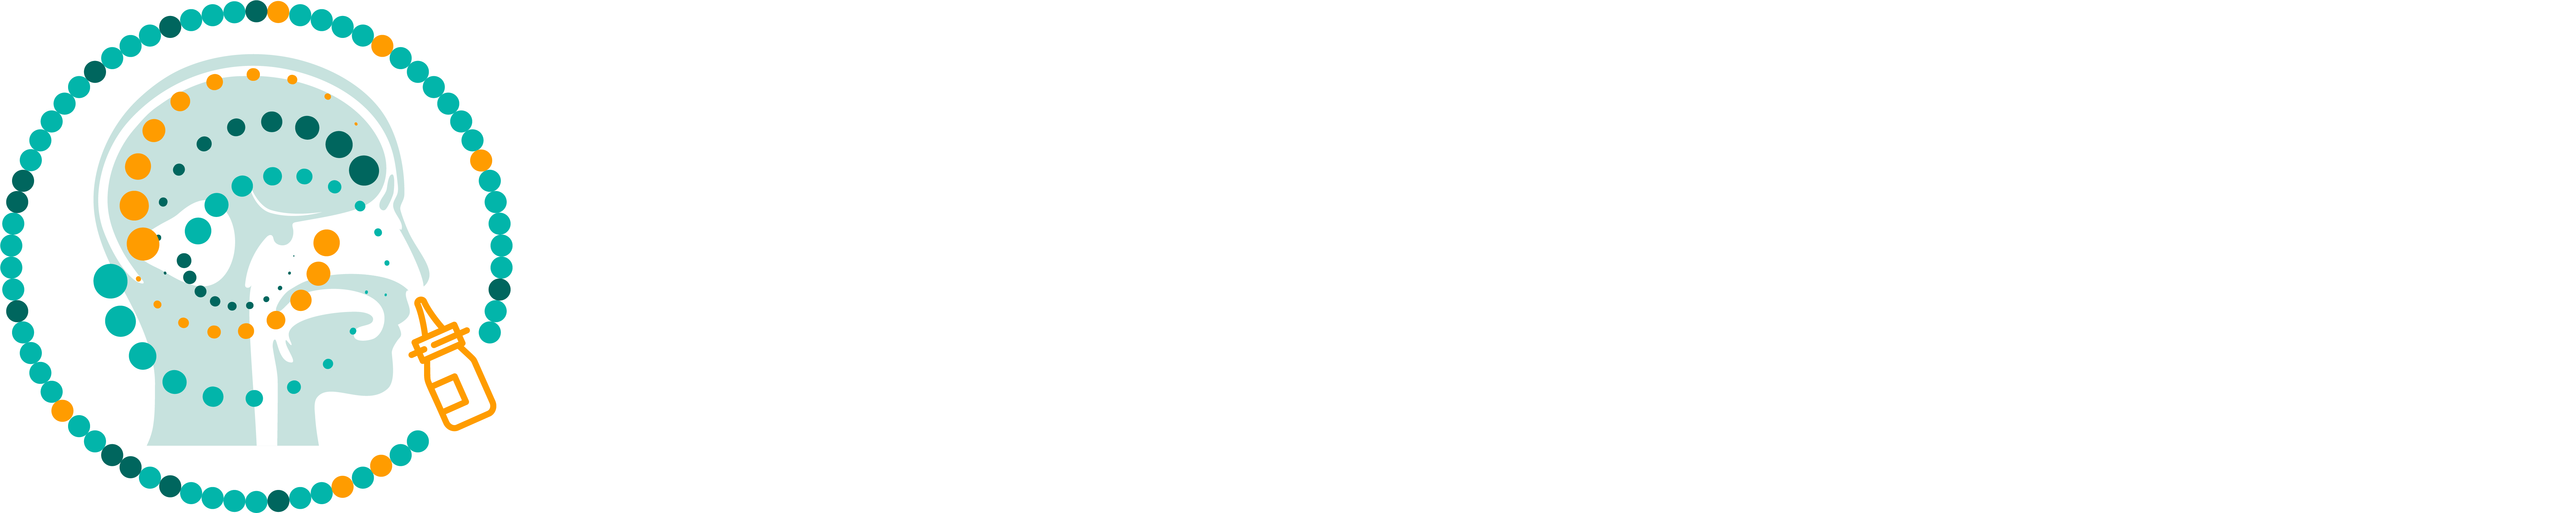 HW221207 32118 ÔÇô Inaugural Novel Nasal Formulation and Delivery Summit logo FINAL W